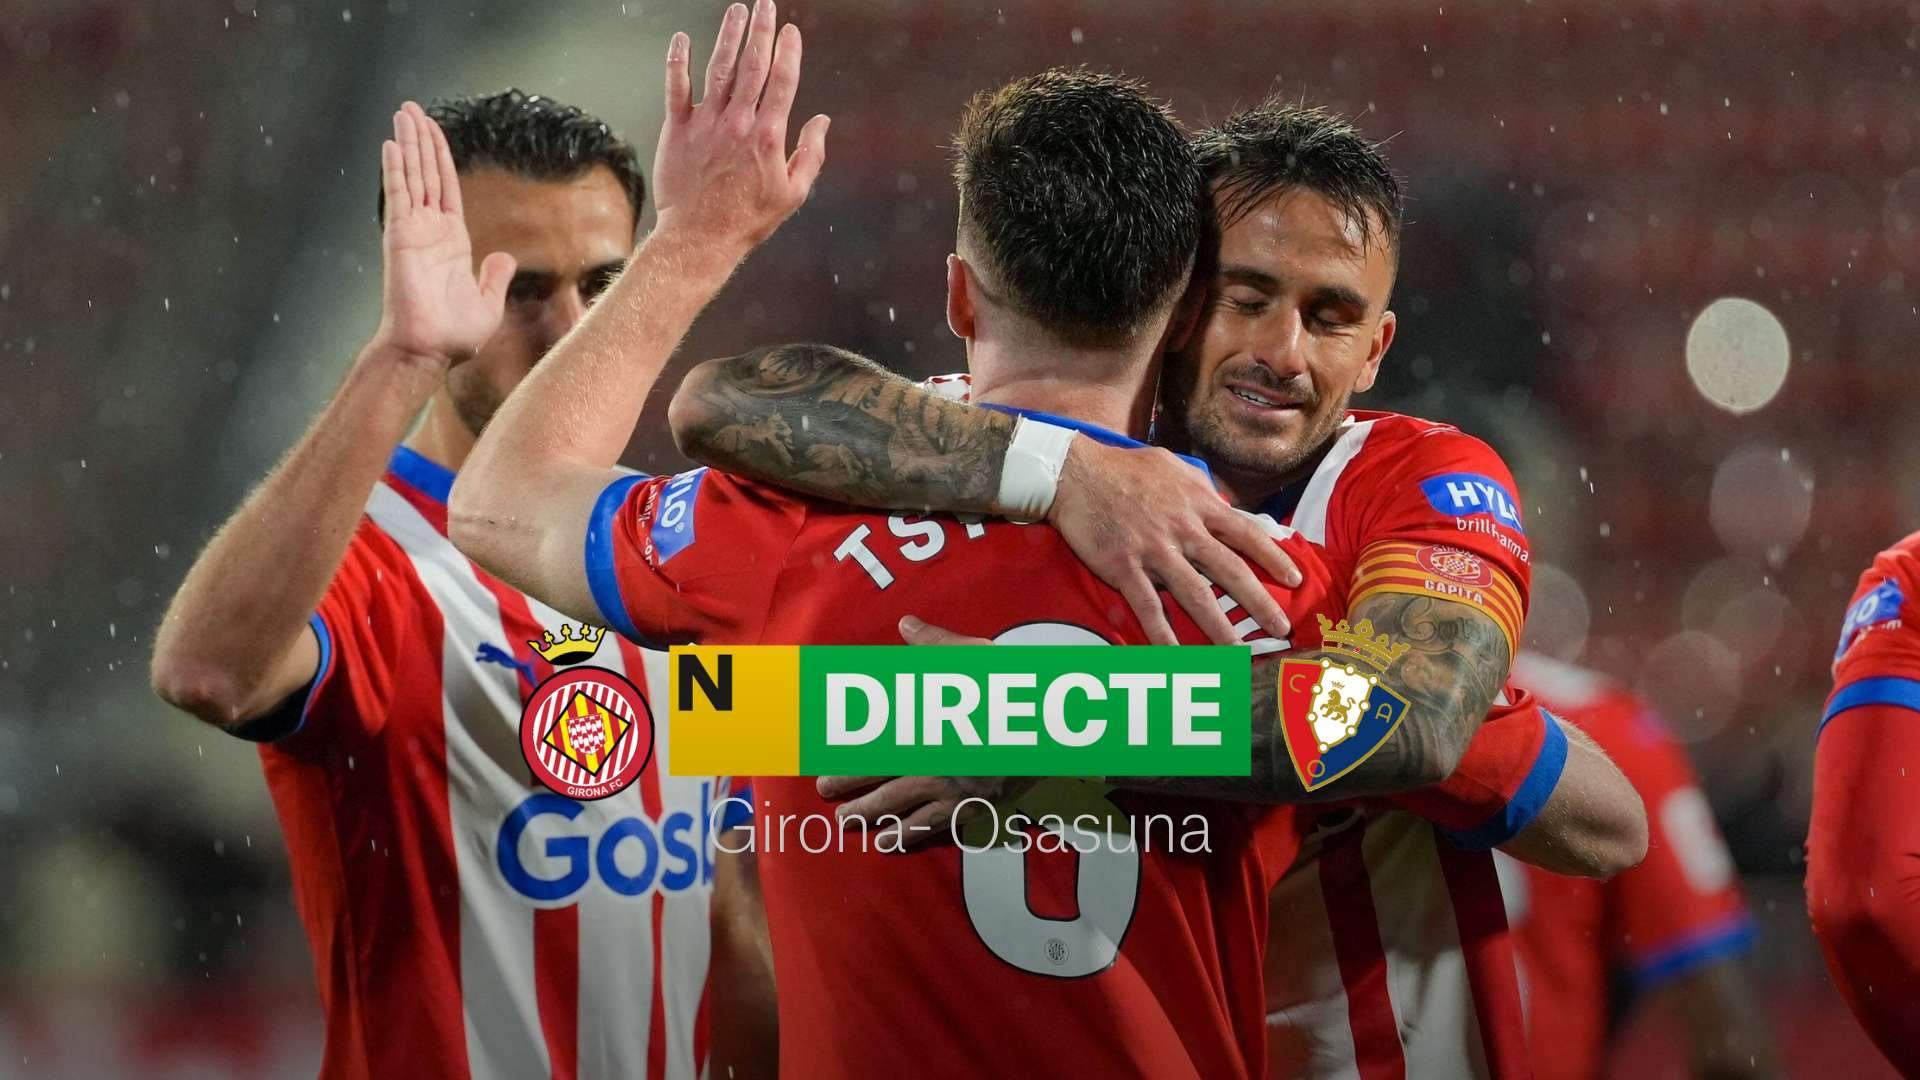 Girona - Osasuna de LaLiga EA Sports, DIRECTO | Resultado, resumen y goles